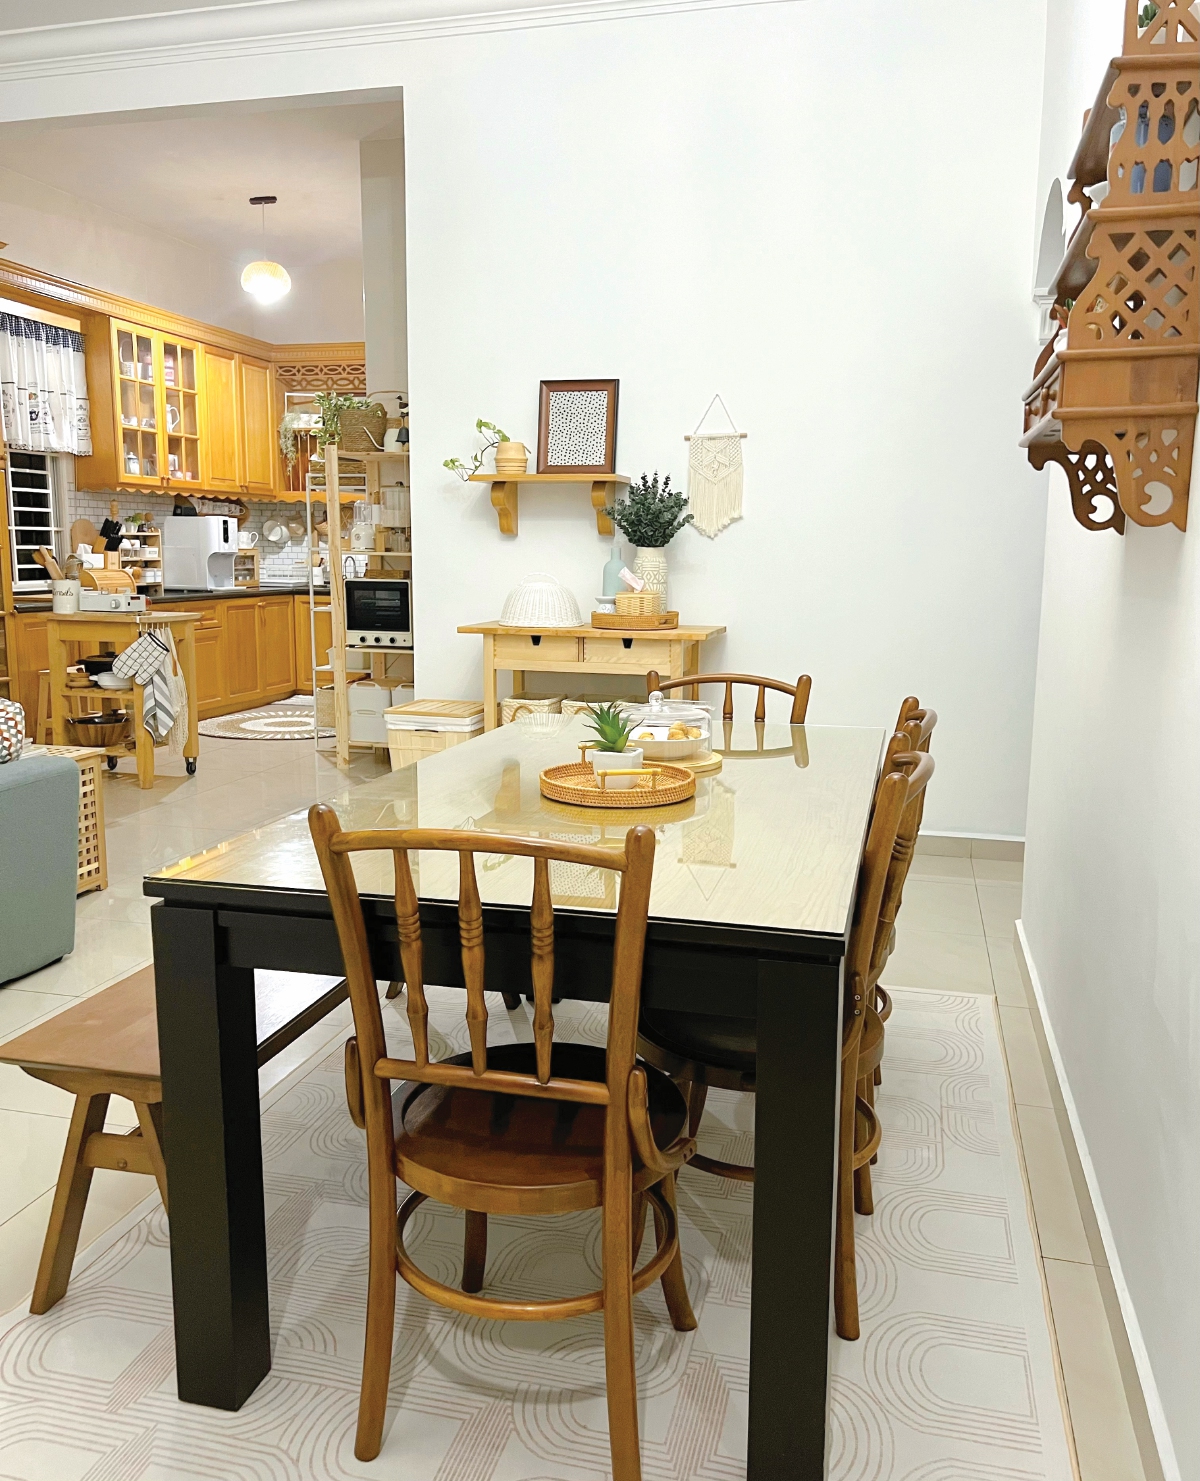 PERABOT dan aksesori di ruang makan mempunyai kesinambungan dengan rona perabot di dapur.